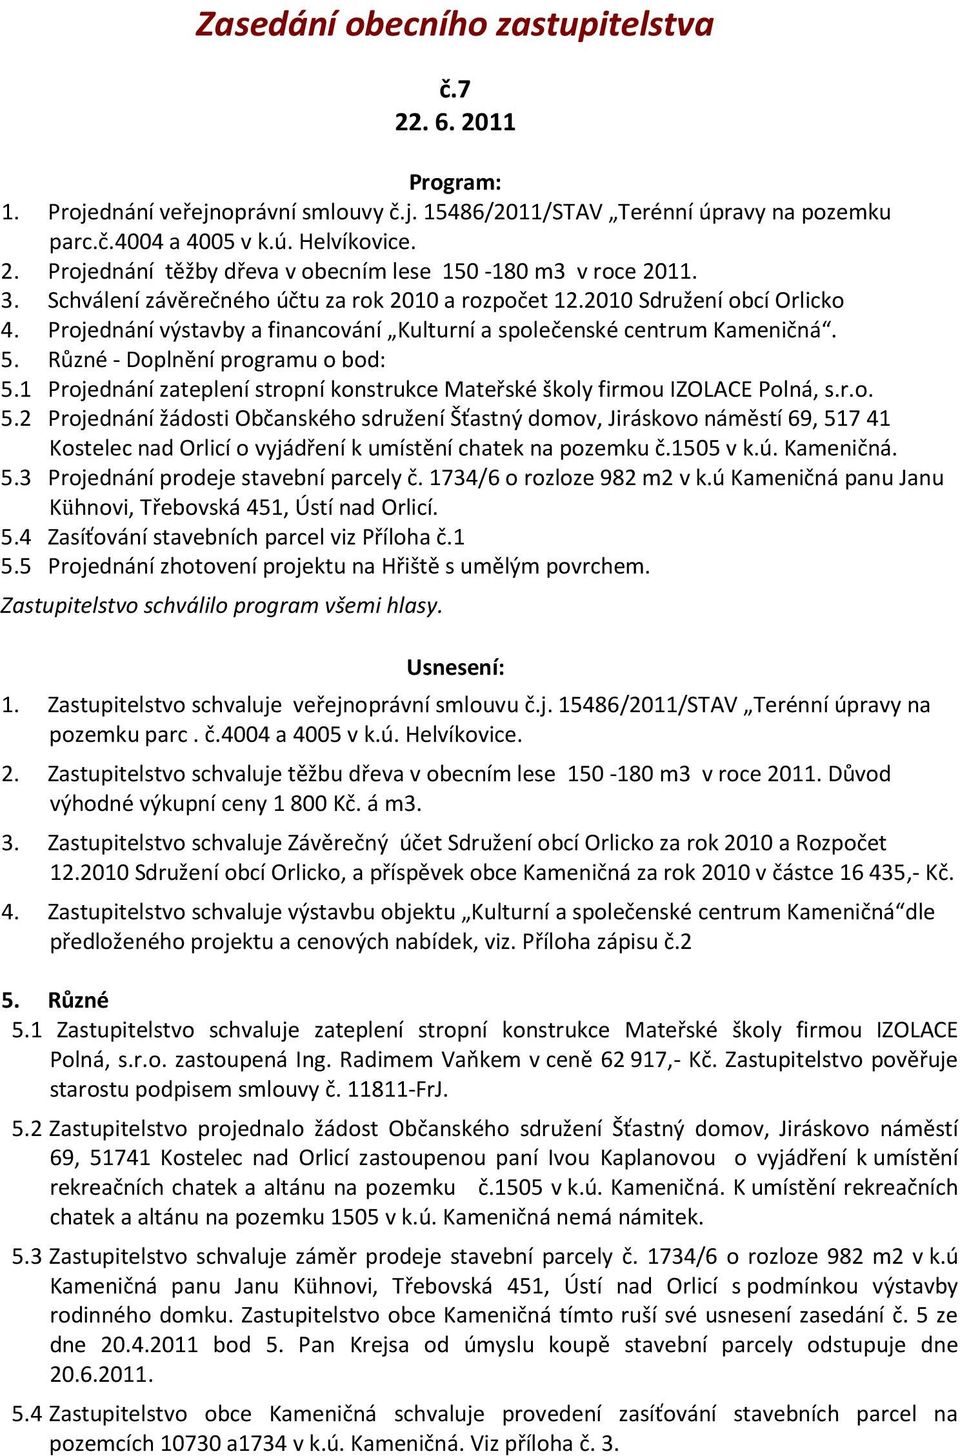 1 Projednání zateplení stropní konstrukce Mateřské školy firmou IZOLACE Polná, s.r.o. 5.